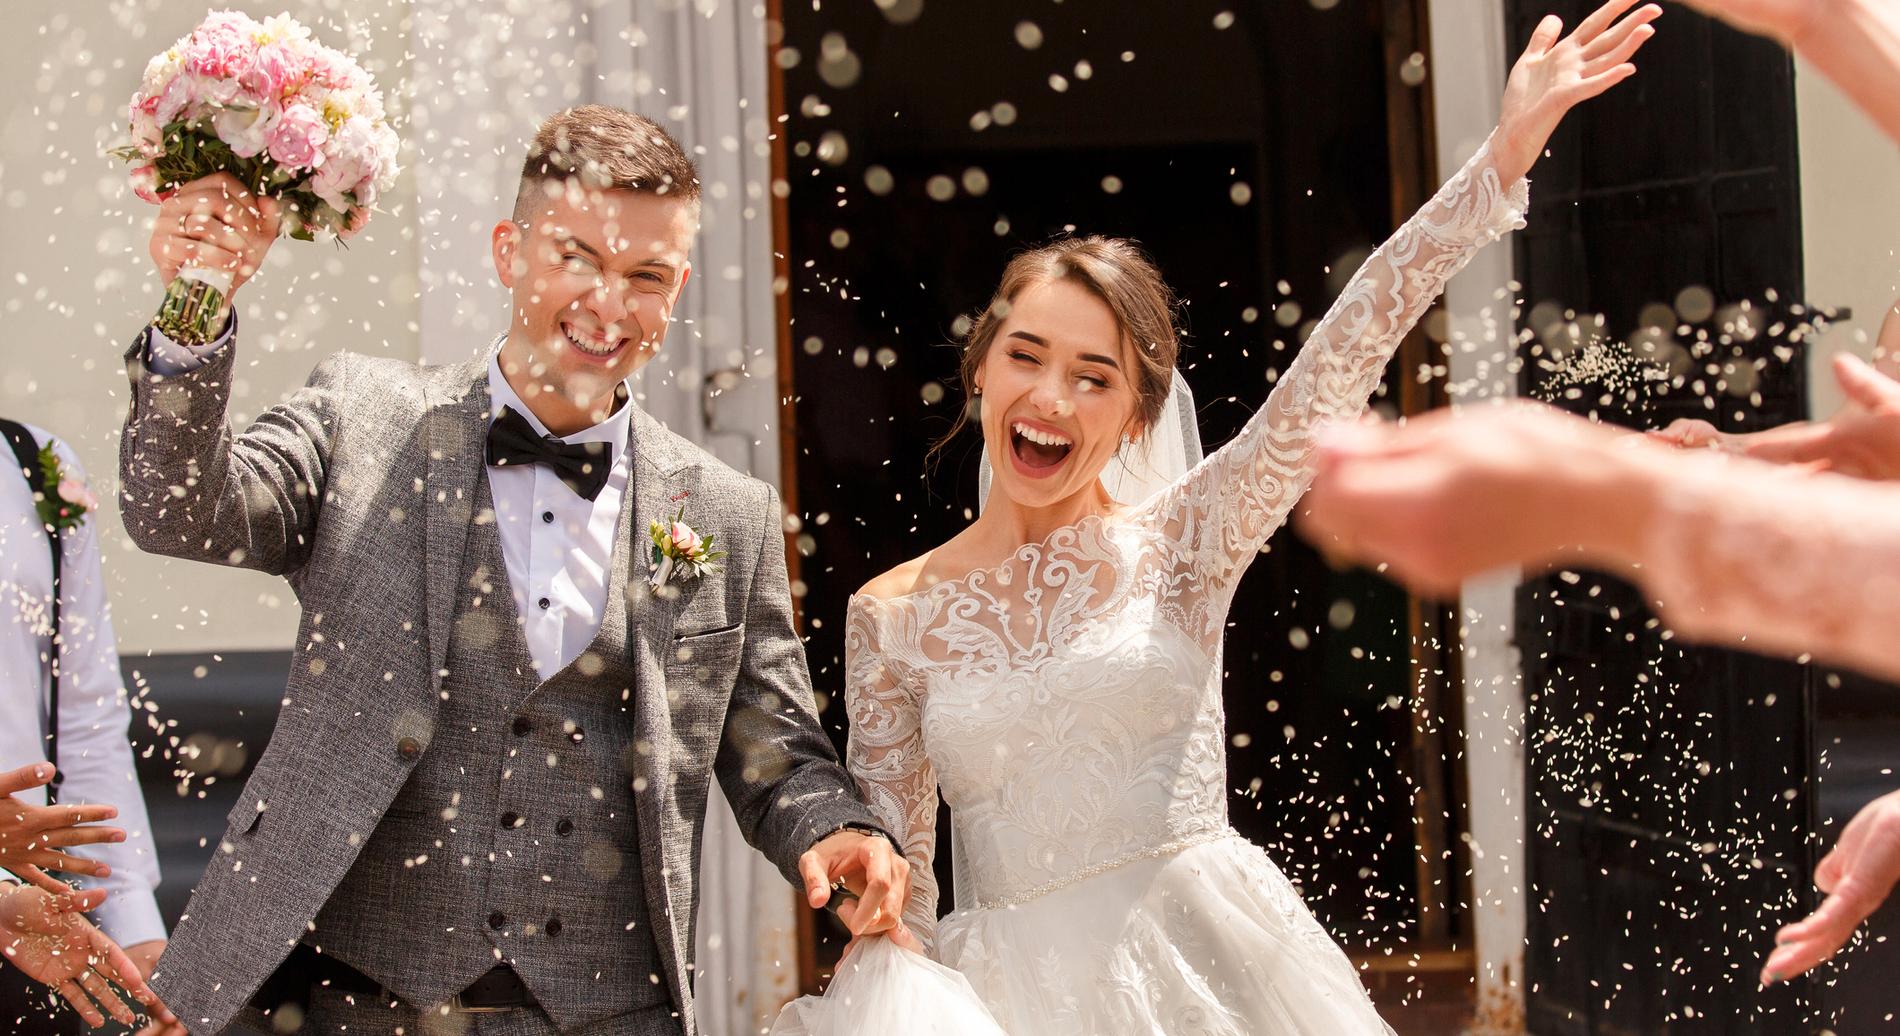 Nej, bröllop är inte i första hand en partytillställning, enligt Edward Blom.